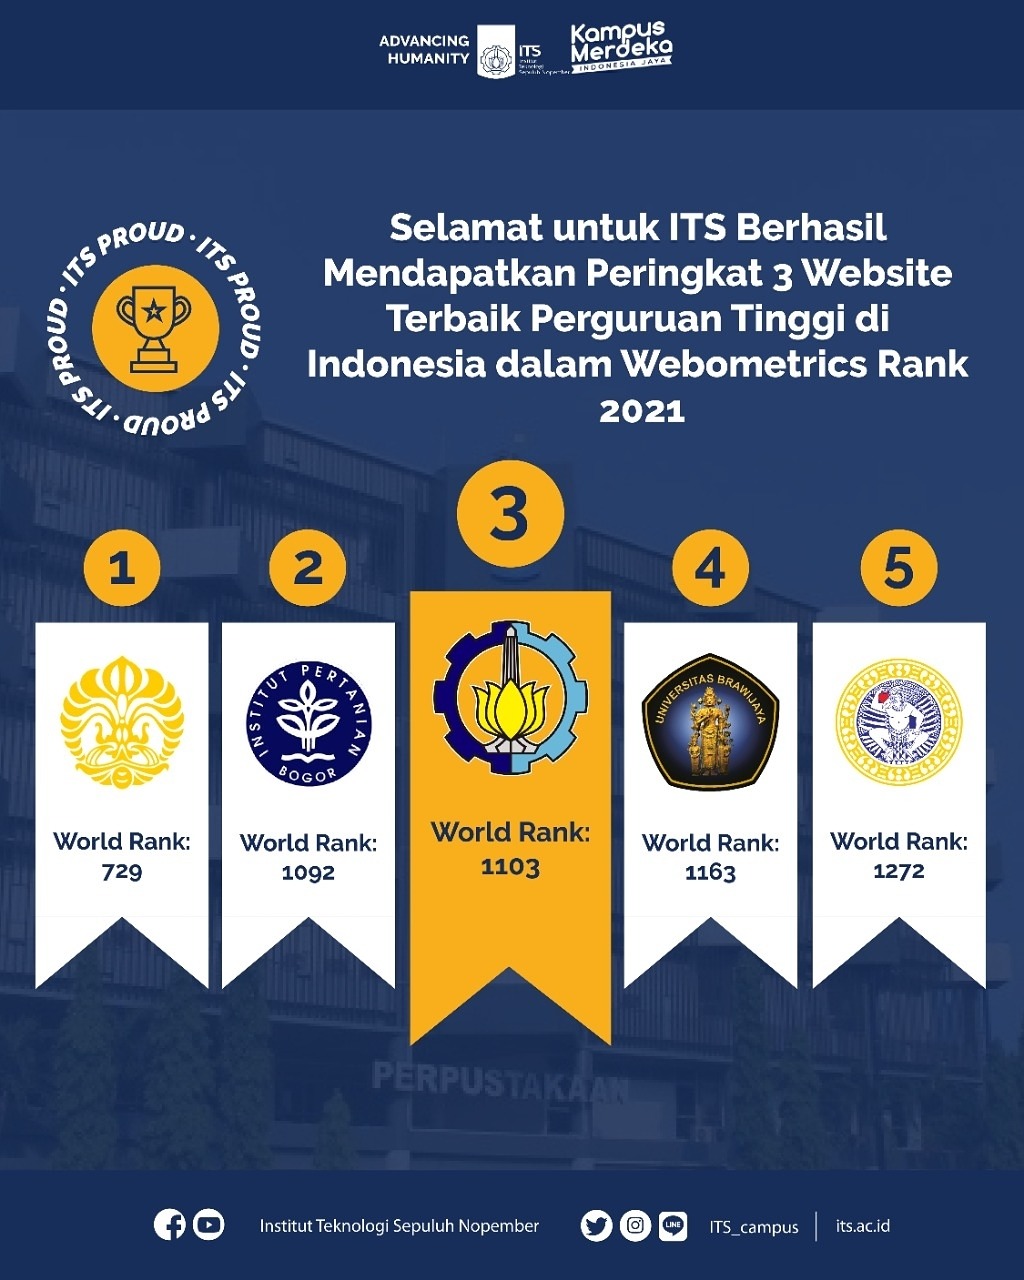 Ranking universitas di indonesia 2021